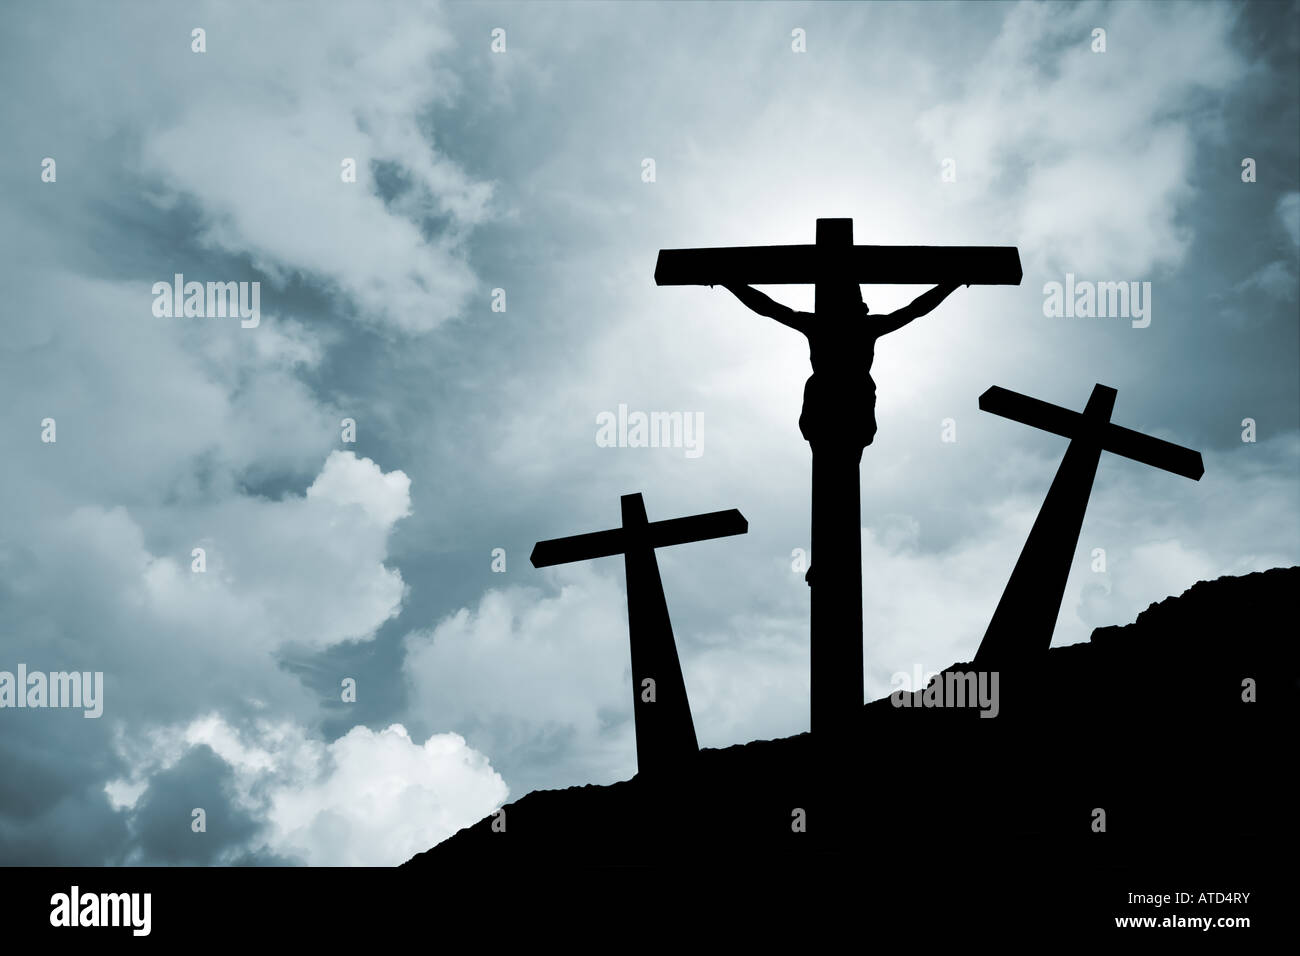 Jesus Christus gekreuzigt in Golgatha / Kreuzigung Ostern Kruzifix Golgatha Leidenschaft beleuchtete silhouette Kreuz religion Gott das Christentum Wolken Sturm Himmel Stockfoto